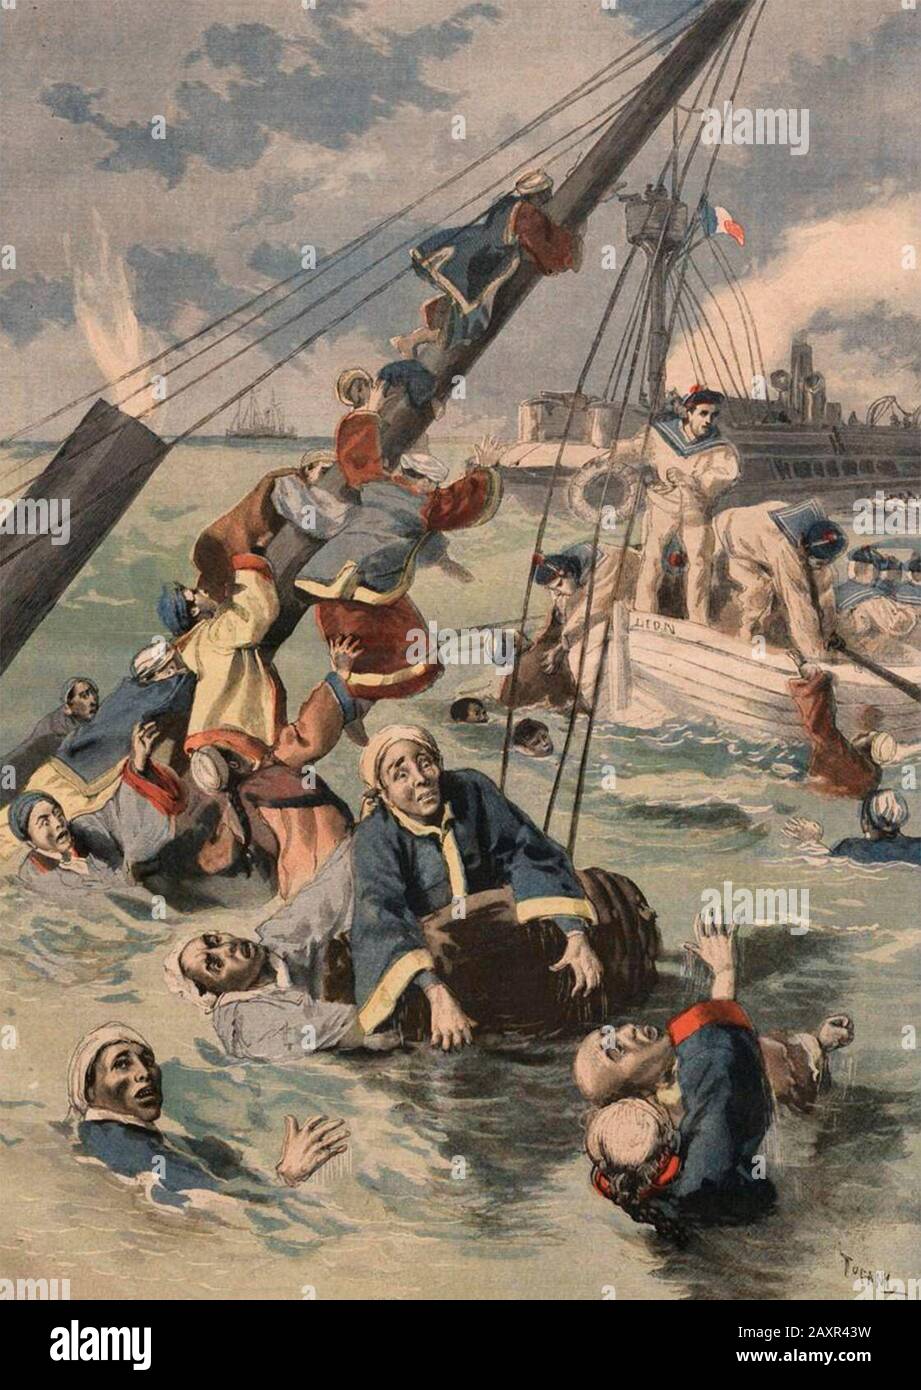 Darstellung des französischen Periodikums Le Petit Journal (August 1894) über den Untergang der Kowshing und die Rettungsbemühungen des französischen Schiffes Le Lion. Stockfoto